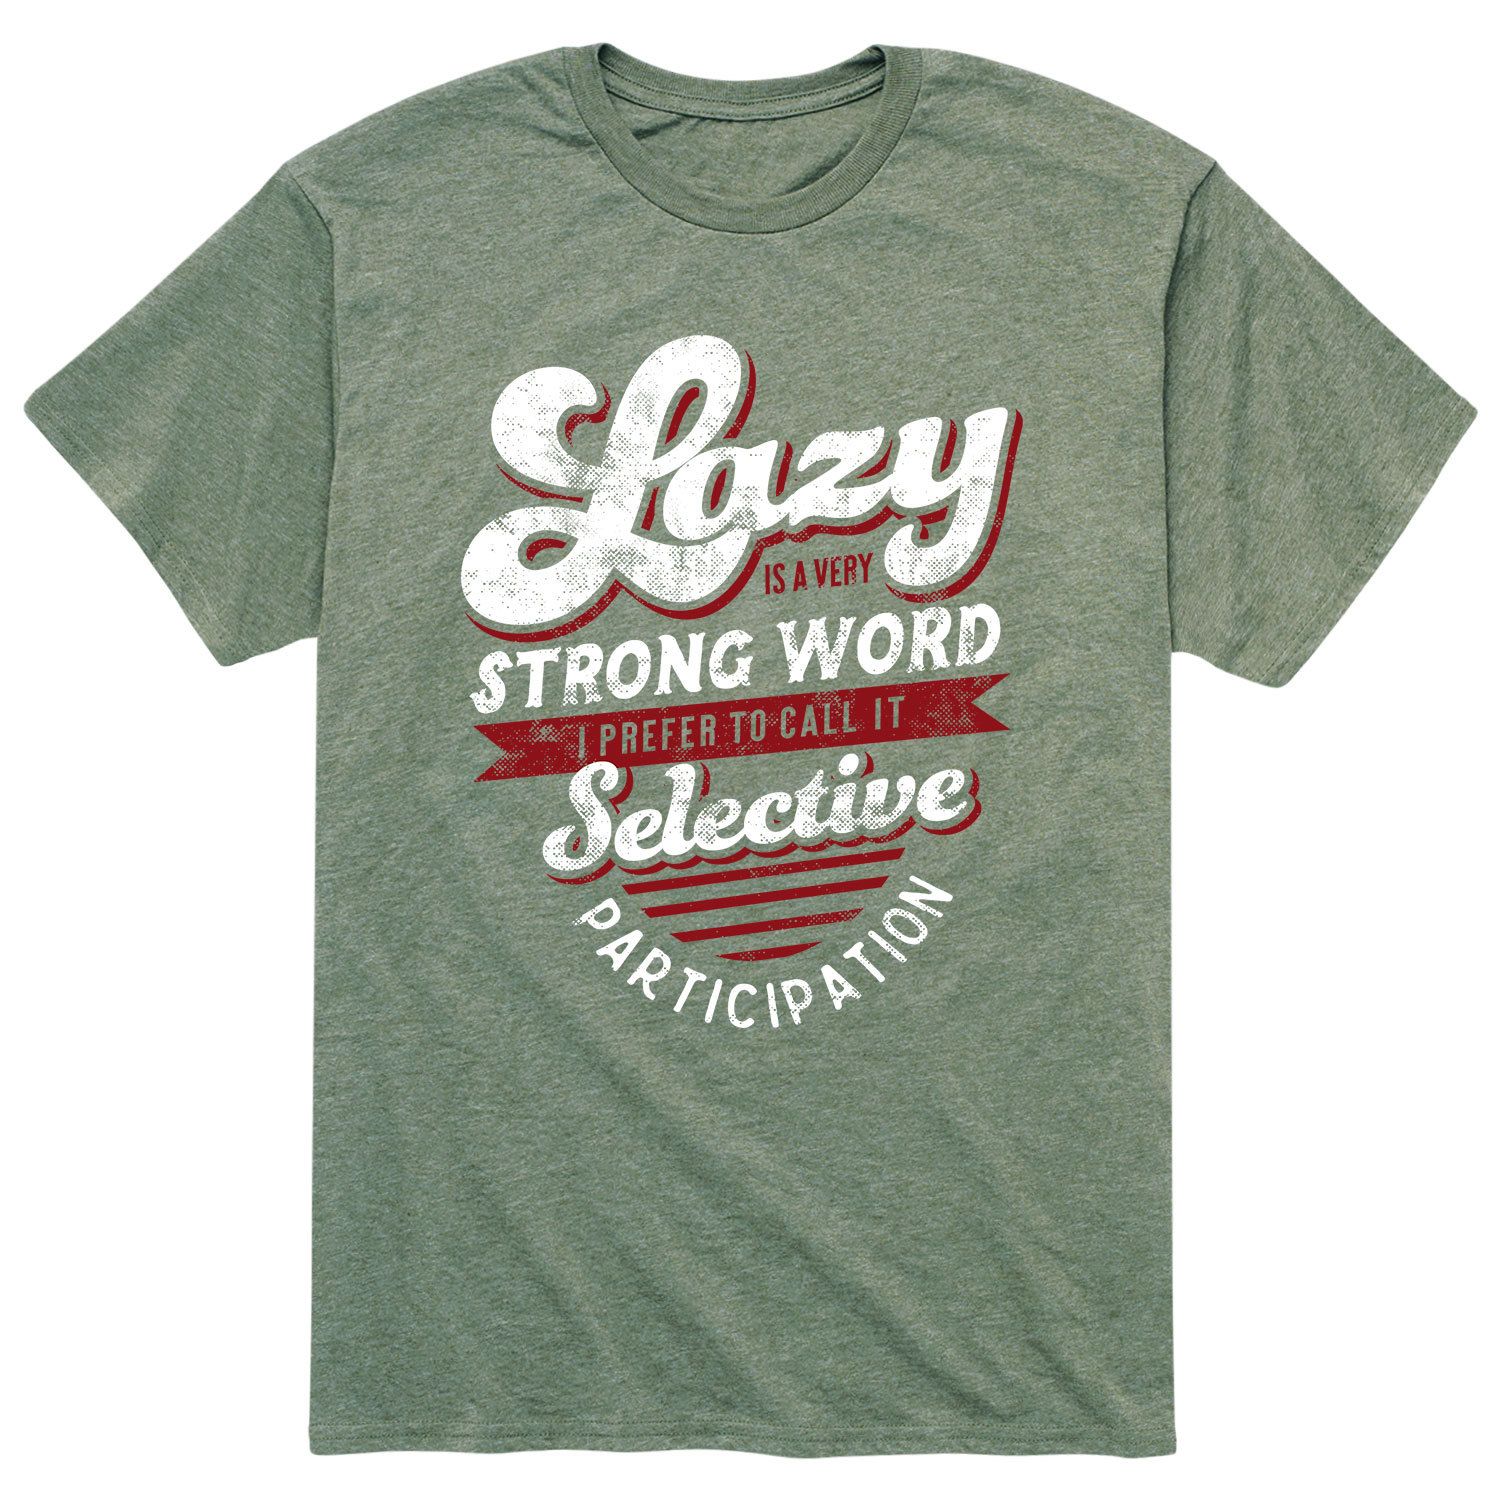 Мужская футболка Lazy — очень сильное слово Licensed Character